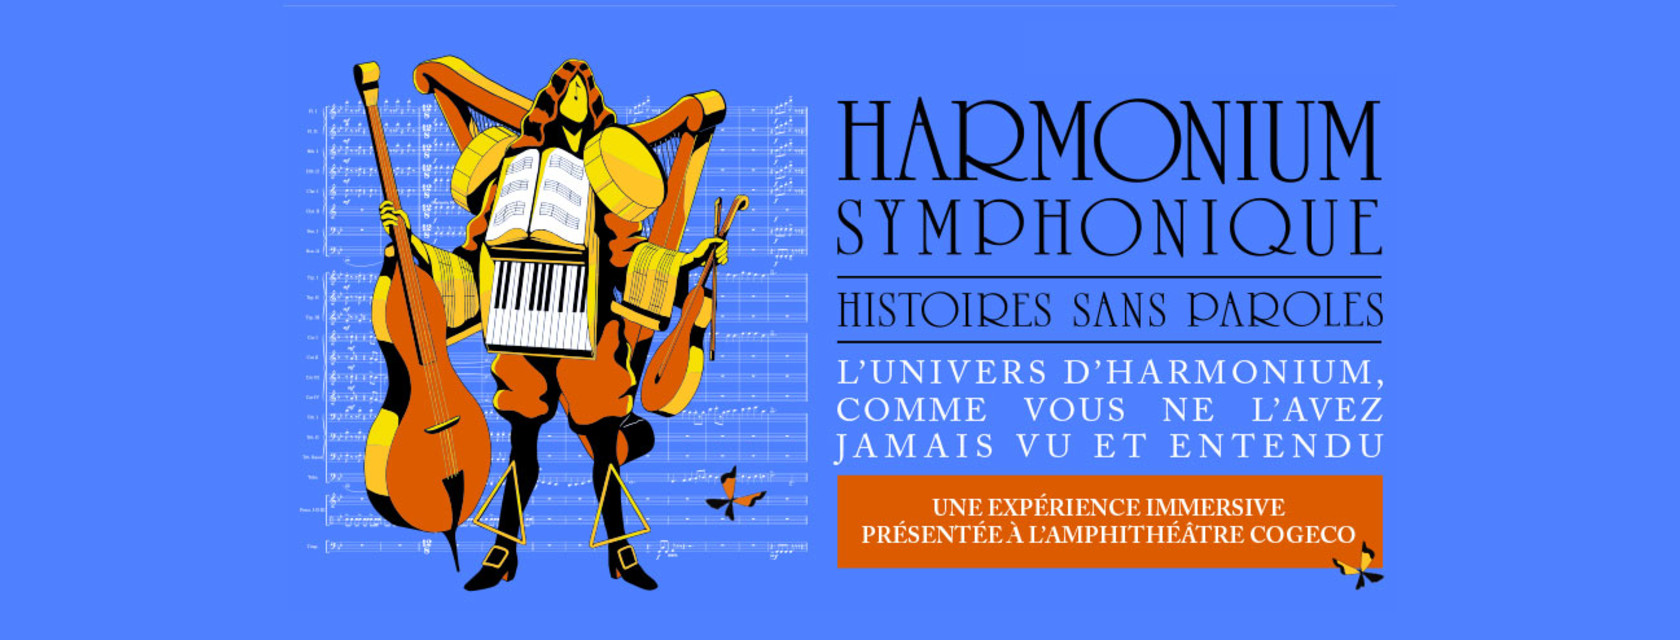 Harmonium symphonique - Histoires sans paroles: une expérience immersive présentée pour  la première fois à l’Amphithéâtre Cogeco